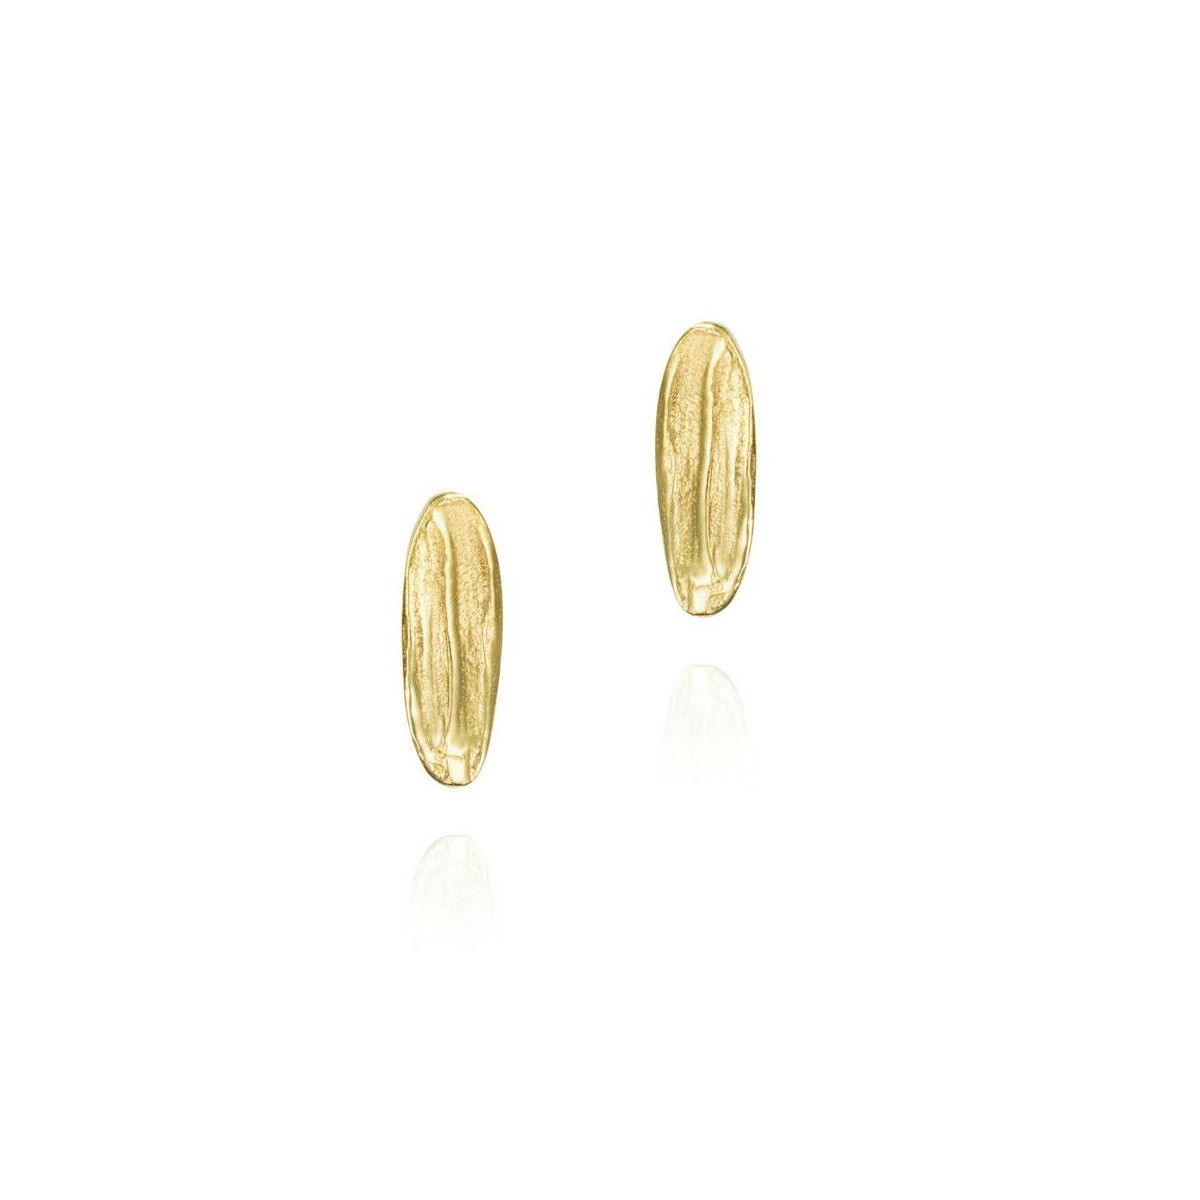 ARIZONA Earrings in Silver. 18k Gold Vermeil